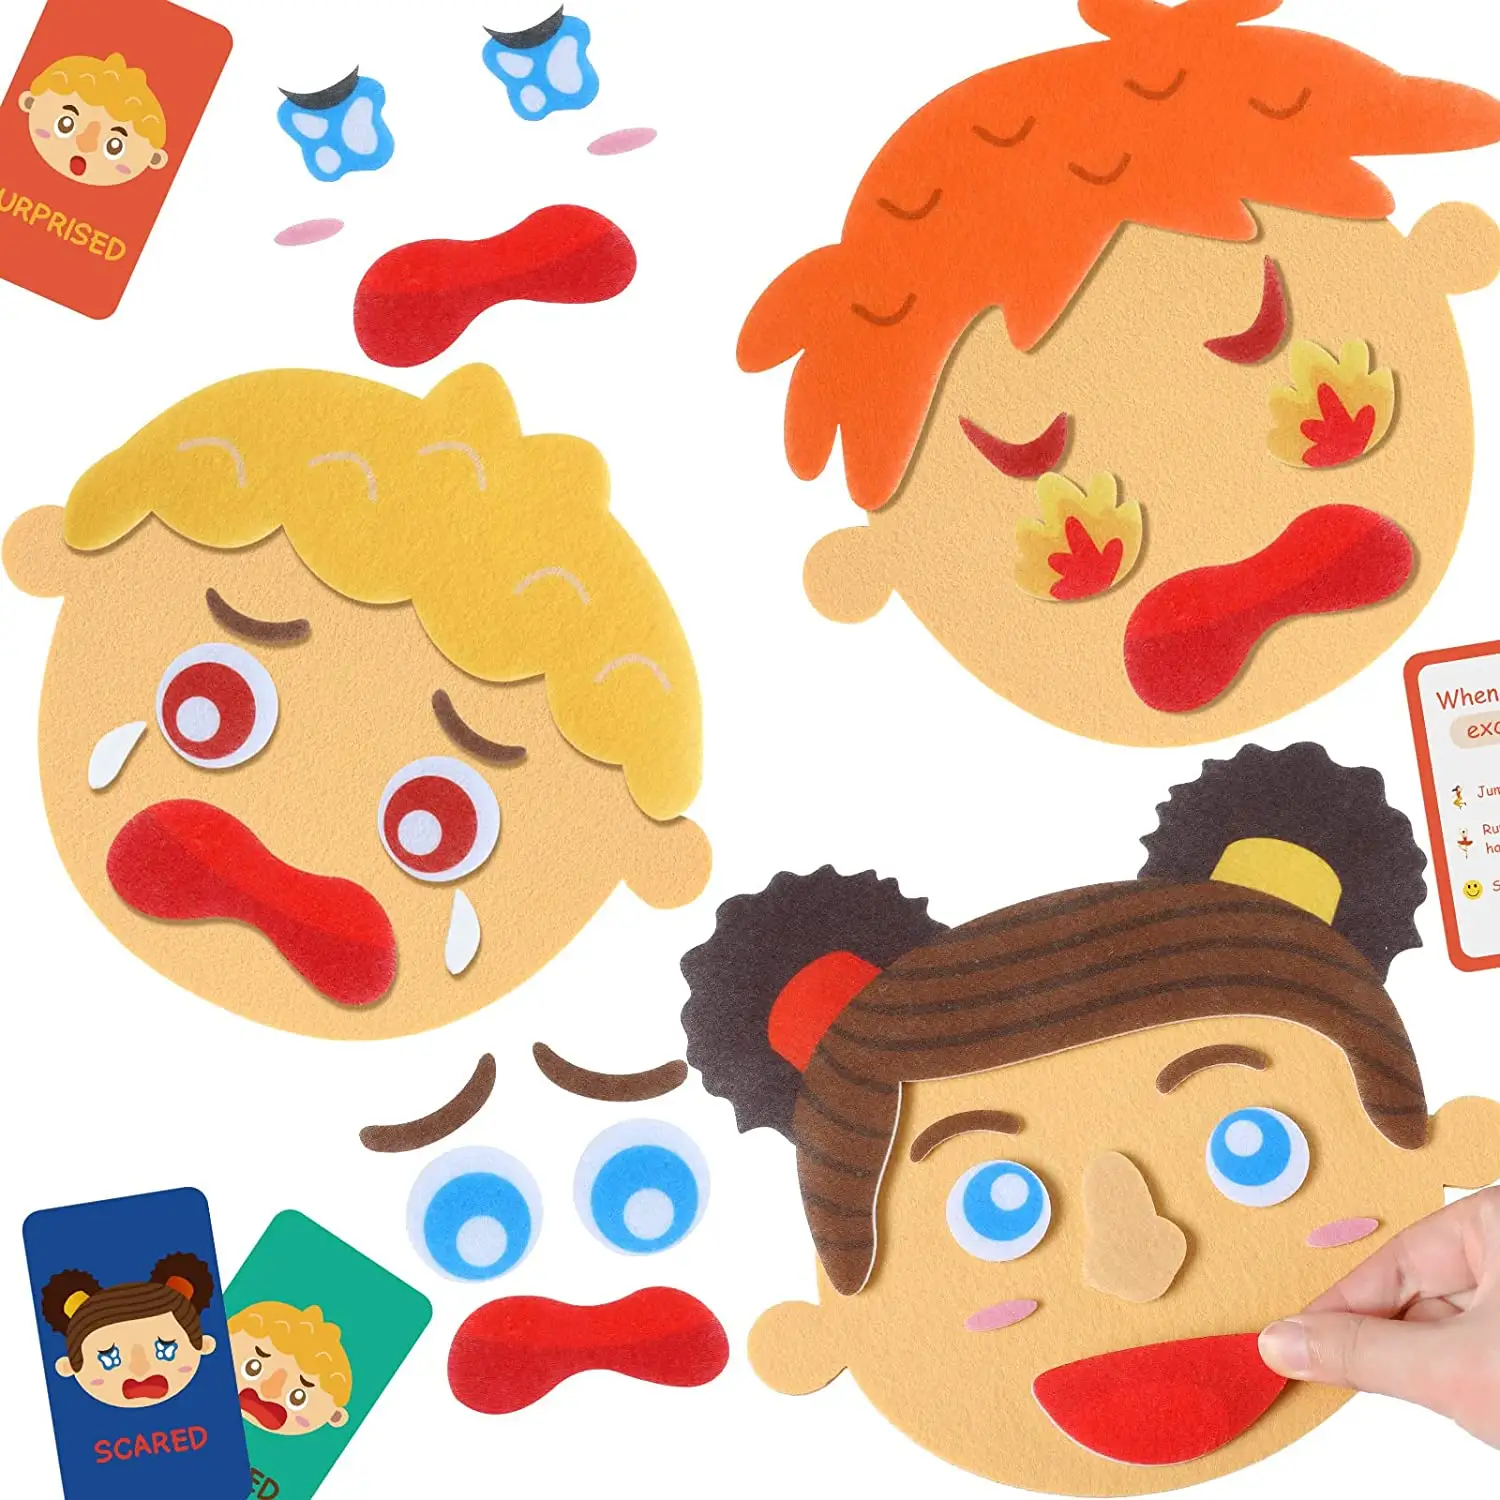 Yüz yapan çocuklar için sosyal duygusal öğrenme faaliyetleri ve duyguları tanımlayan eğitici oyunlar, duygusal eğitici oyuncak